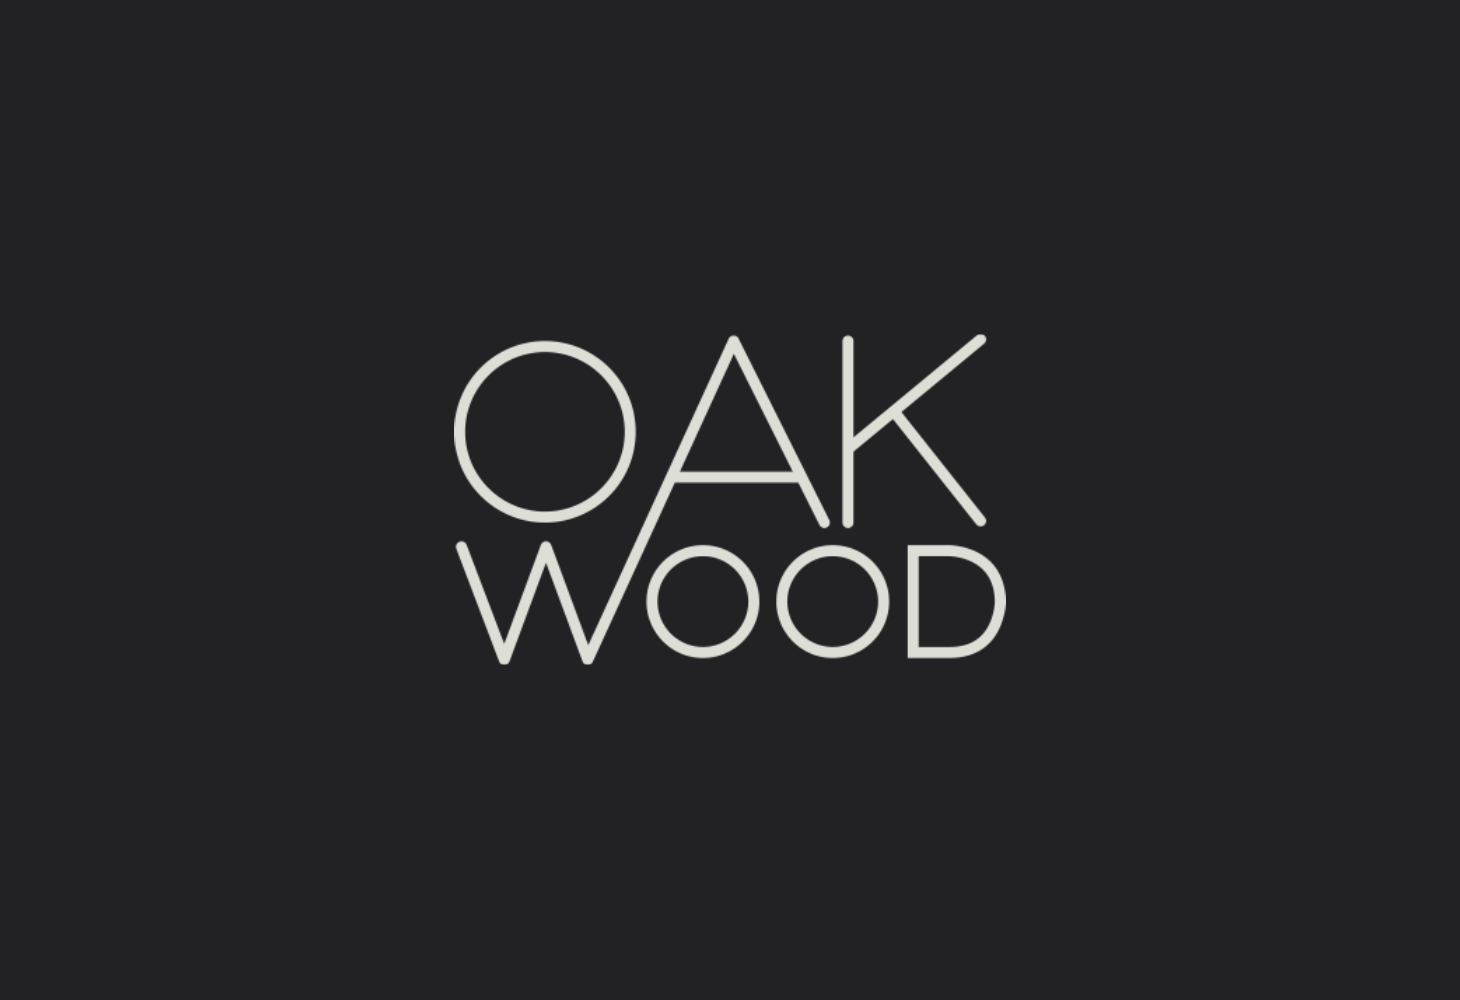 Oakwood - Logotype